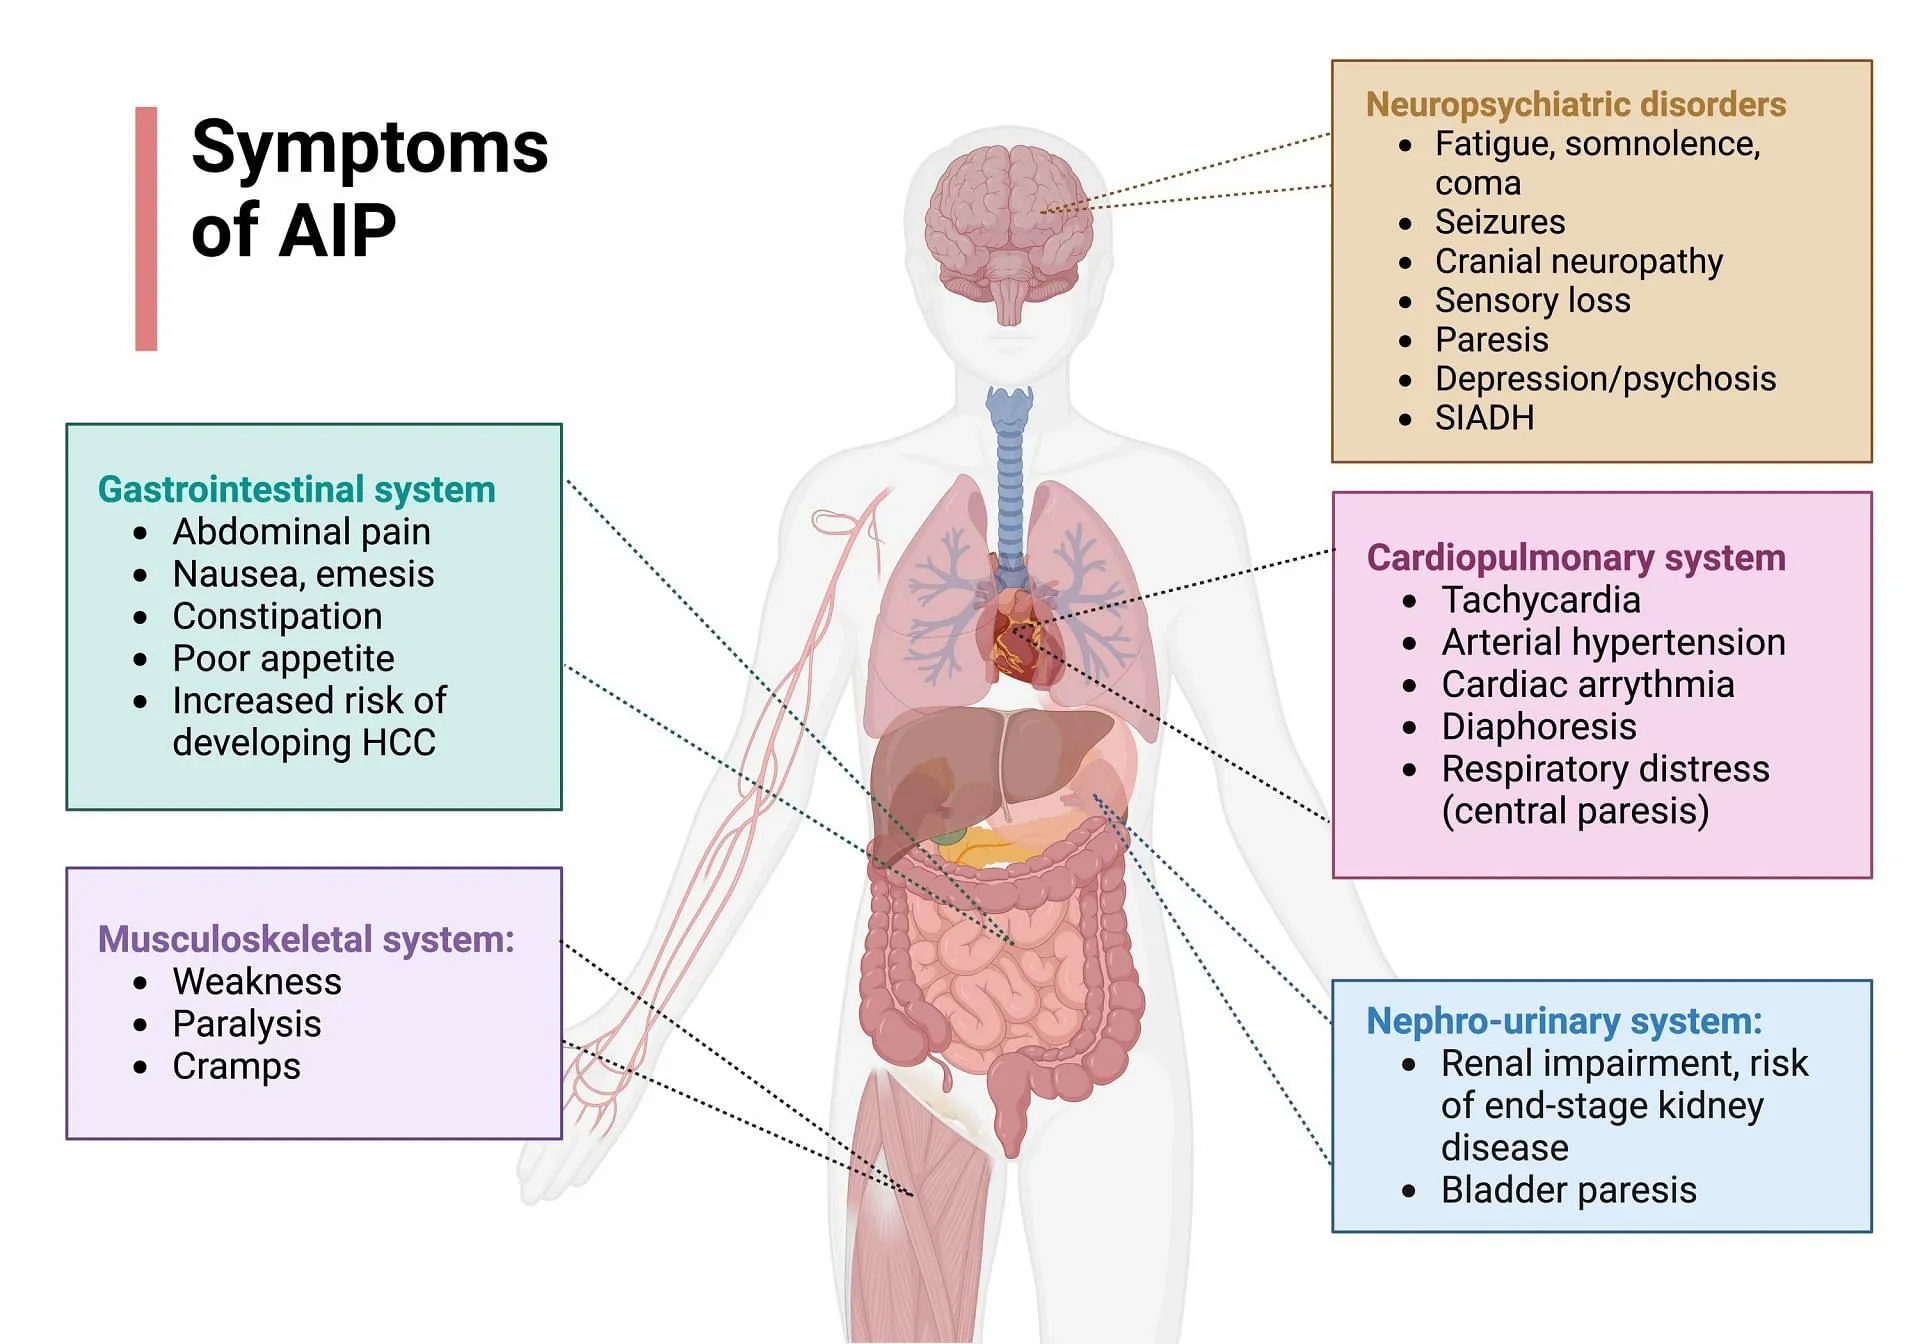 L'AIP è la più comune e quella associata ai sintomi psichiatrici.  (Immagine tramite Lightbox/Lightbox)